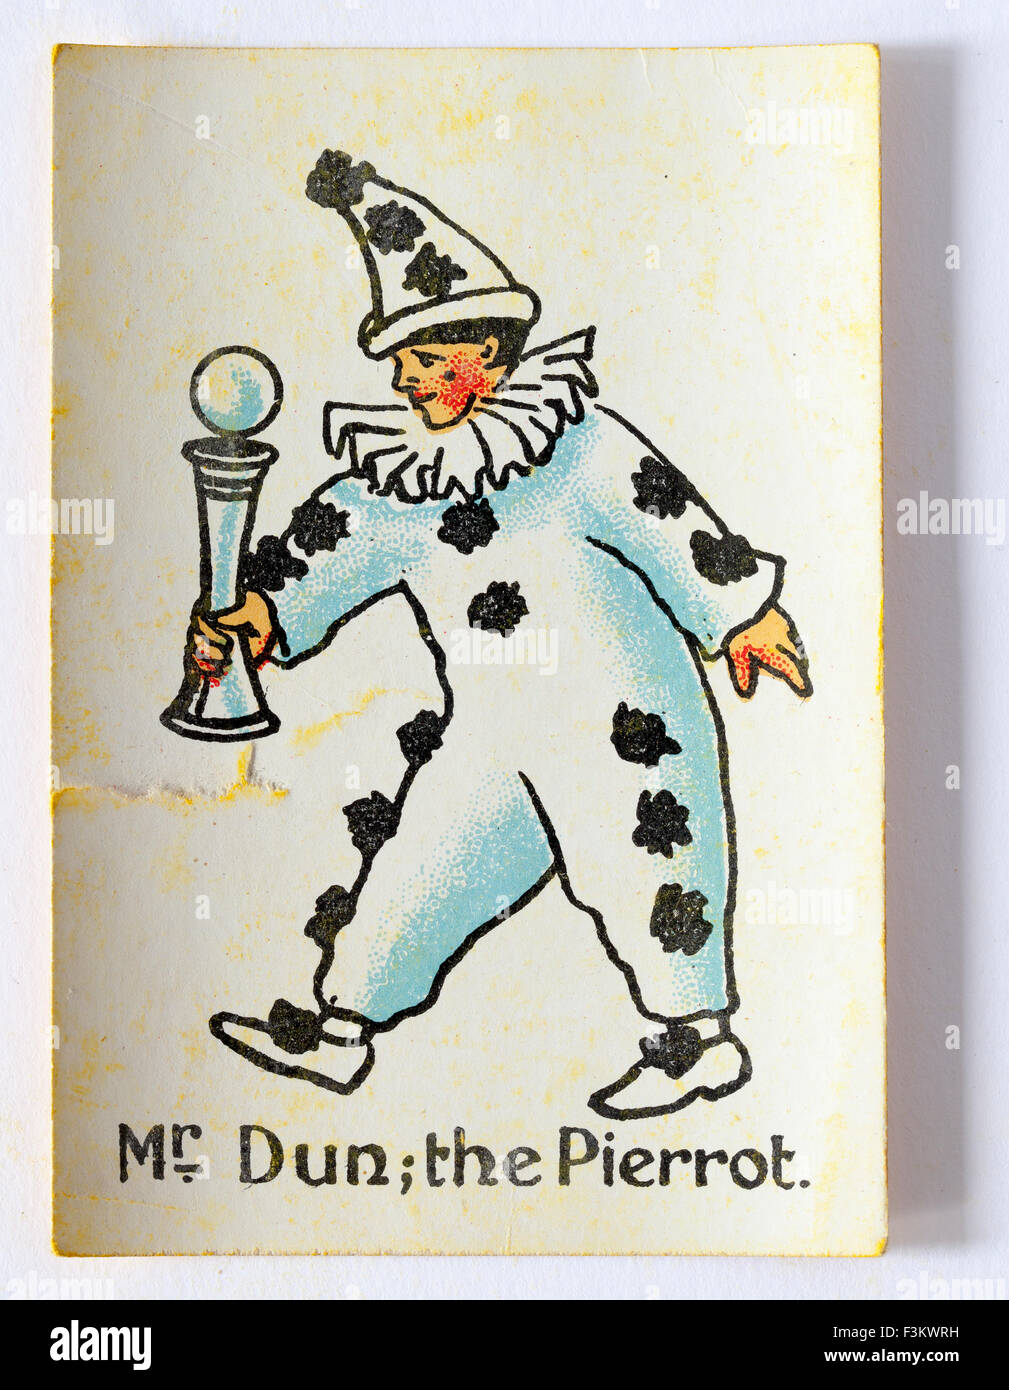 Signor Dun il Pierrot carta da gioco da famiglie felici gioco Foto Stock